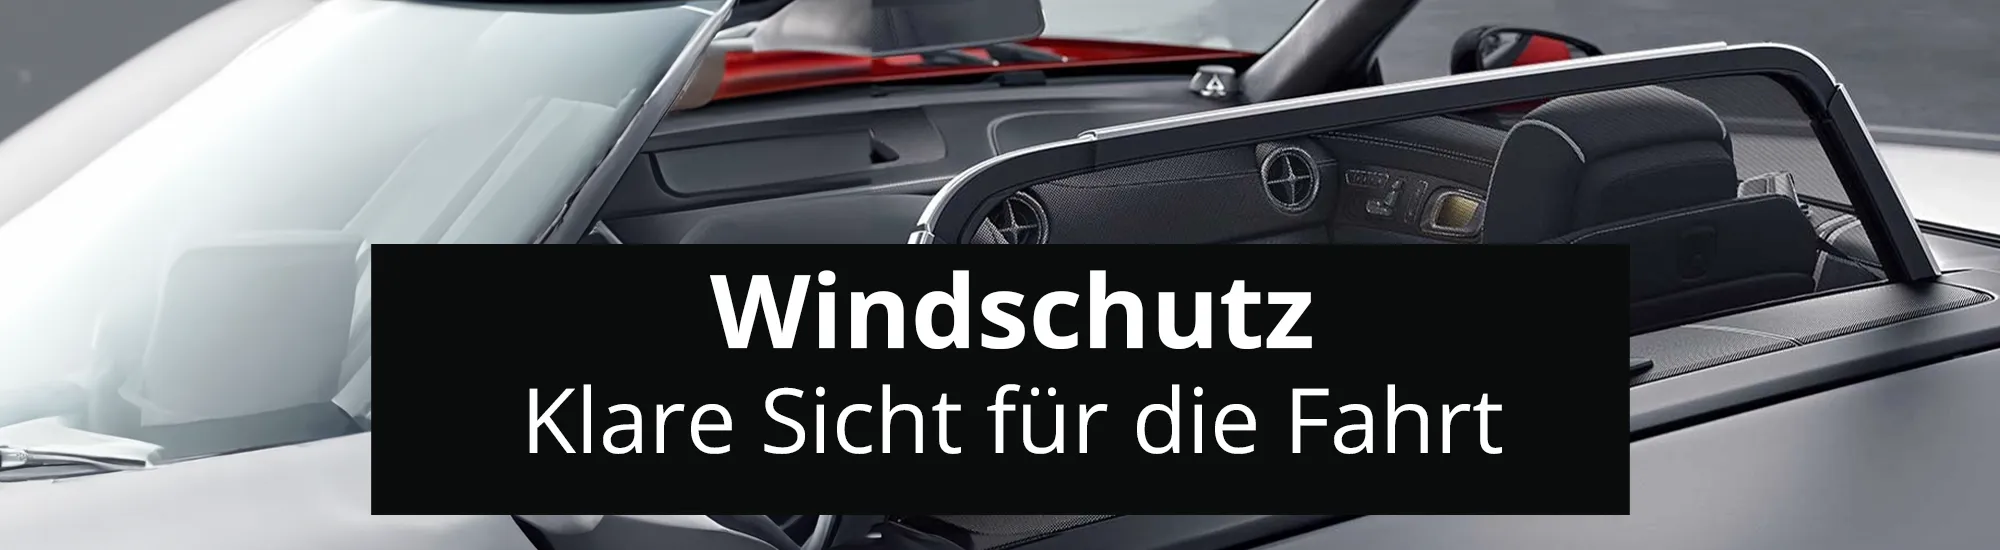 Windschutz header